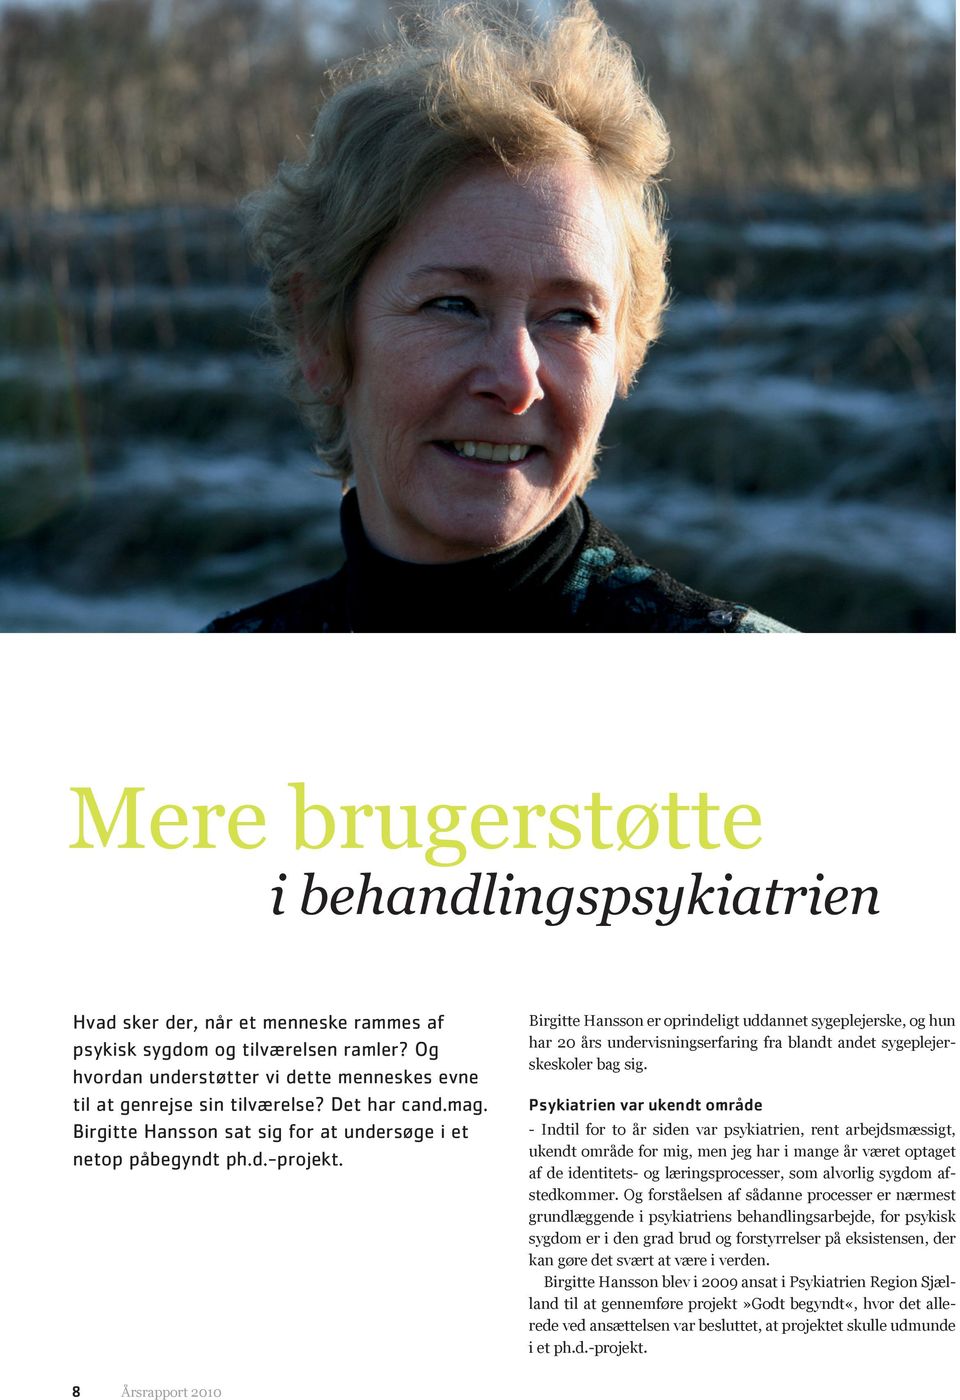 Birgitte Hansson er oprindeligt uddannet sygeplejerske, og hun har 20 års undervisningserfaring fra blandt andet sygeplejerskeskoler bag sig.